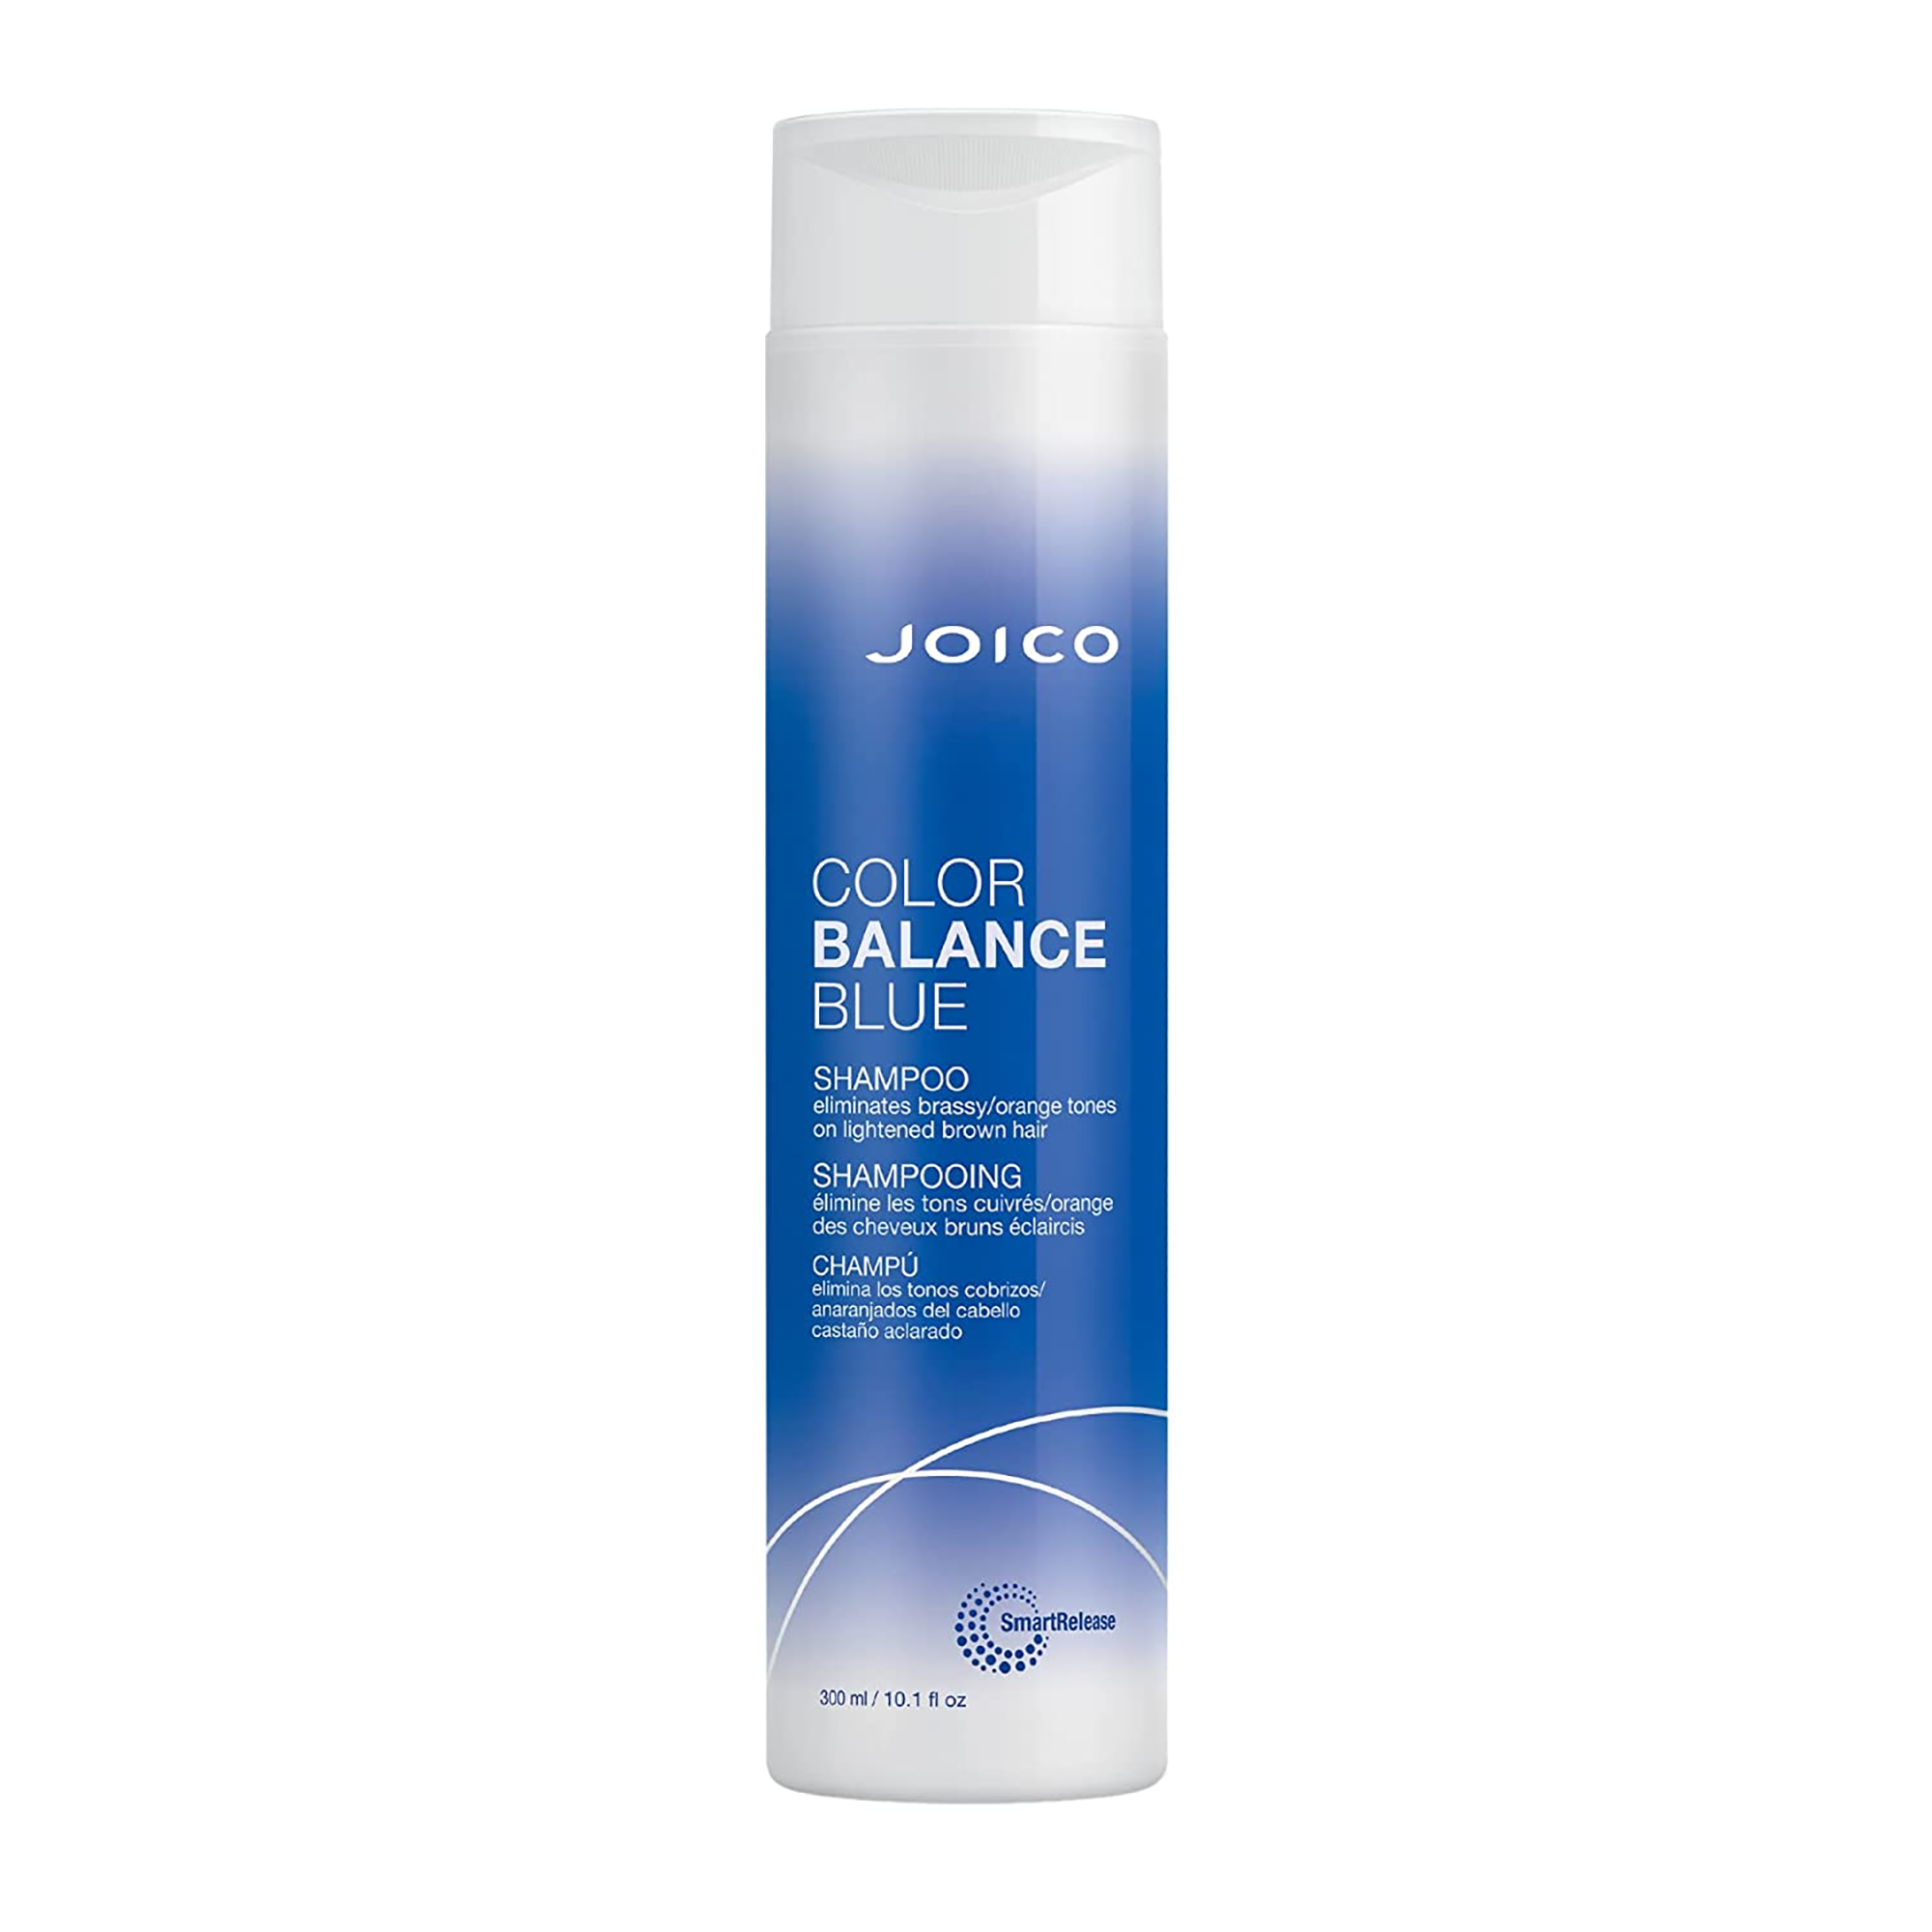 Joico Color Balance Blue Shampoo / 10.1